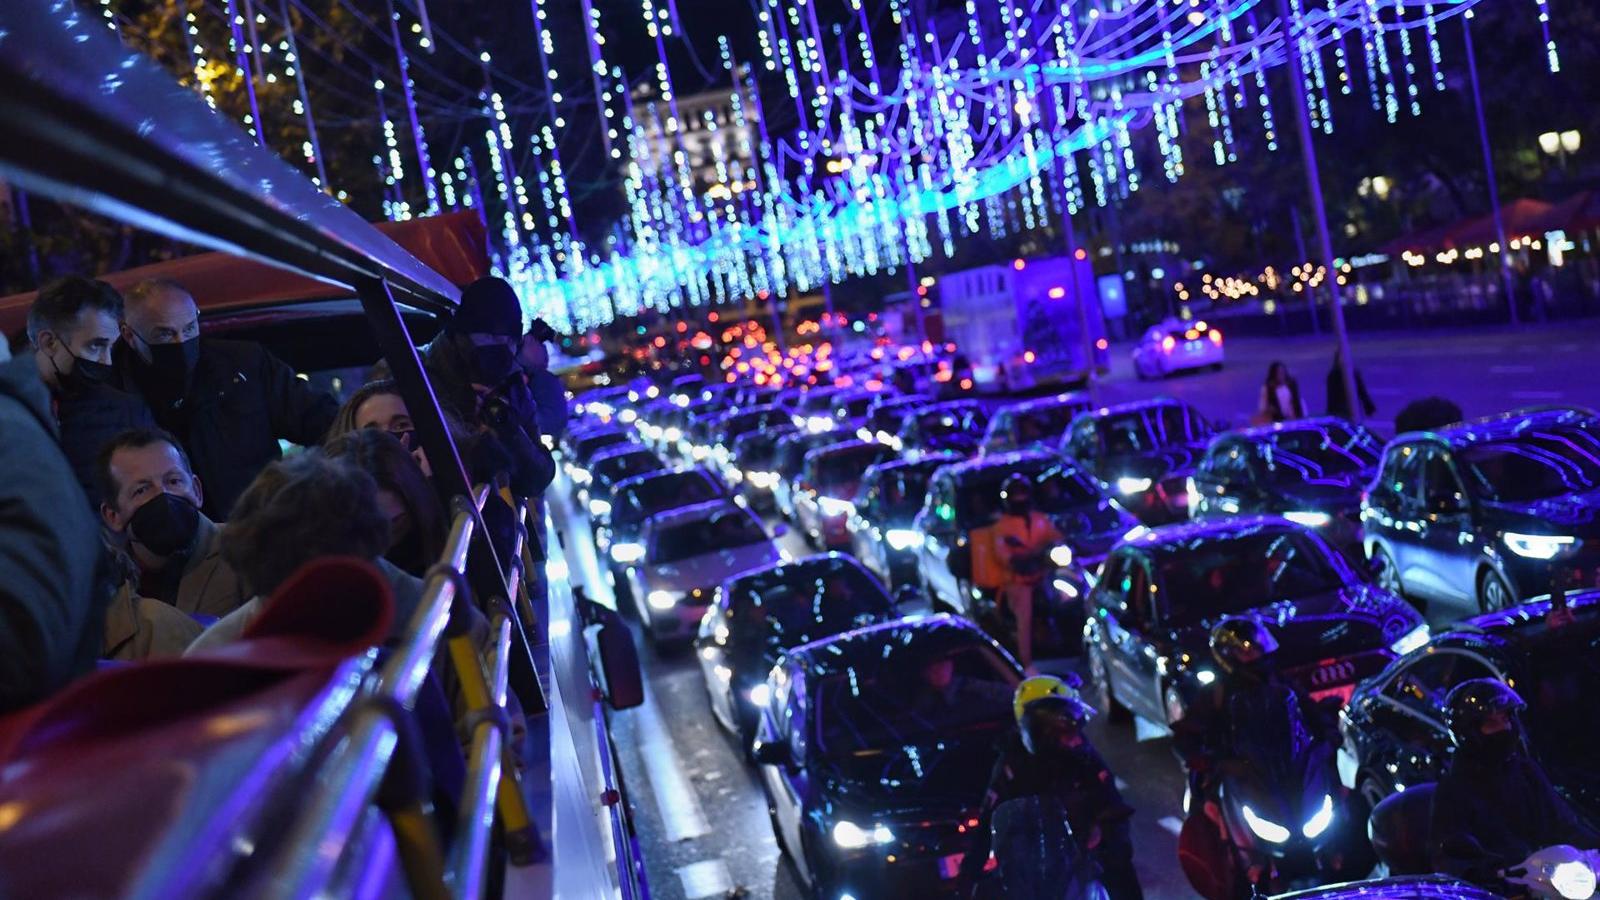 El autobús Naviluz regresa a las calles de Madrid para disfrutar de las luces navideñas